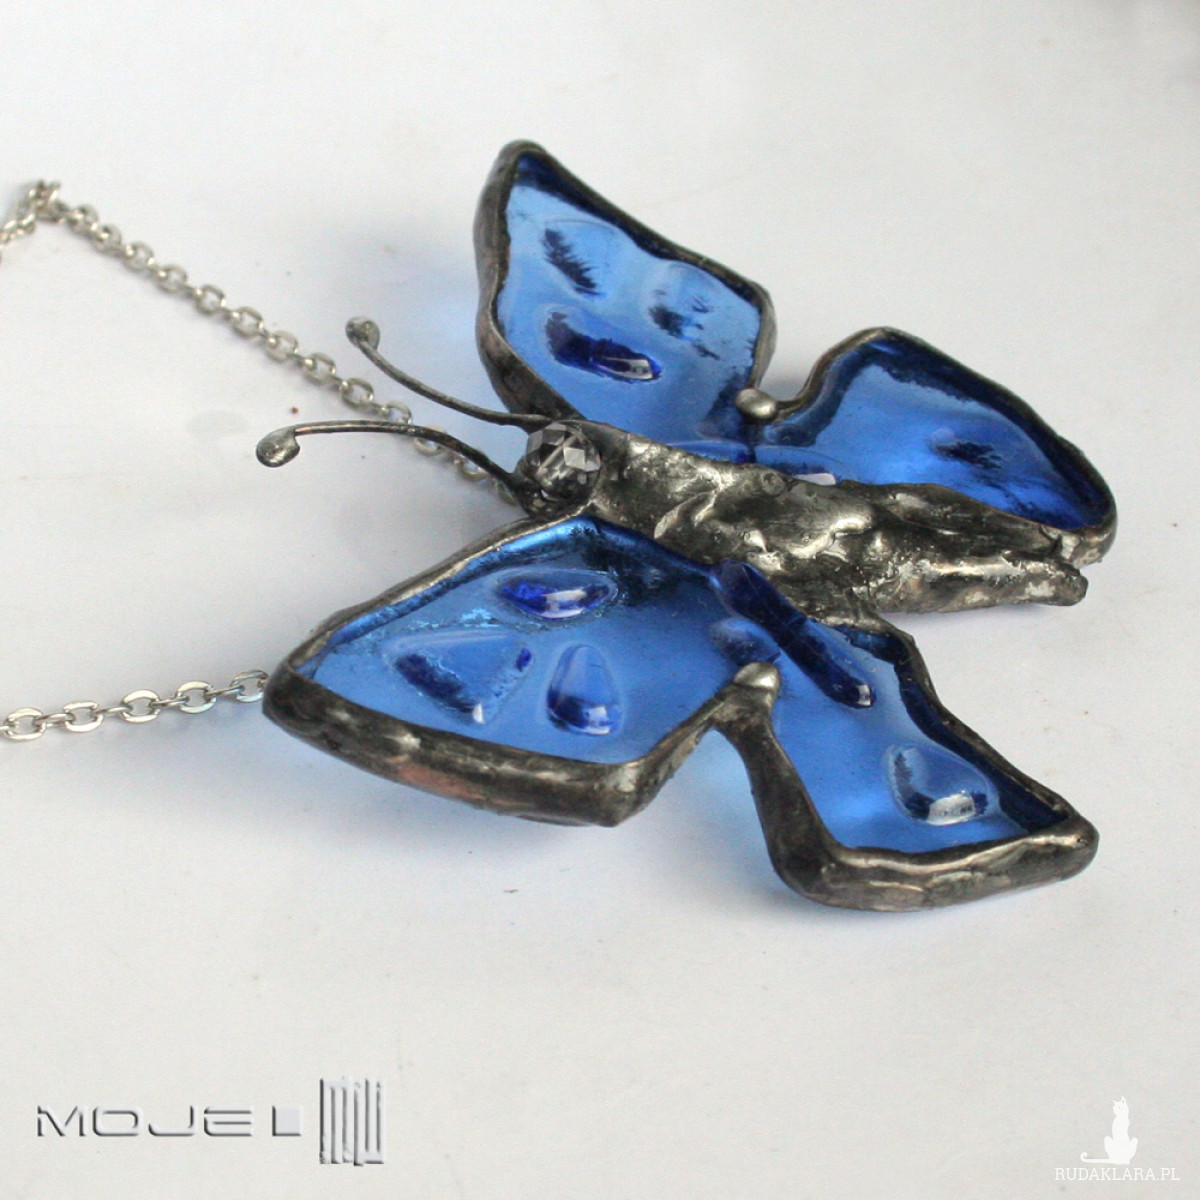 Niebieski motyl IV